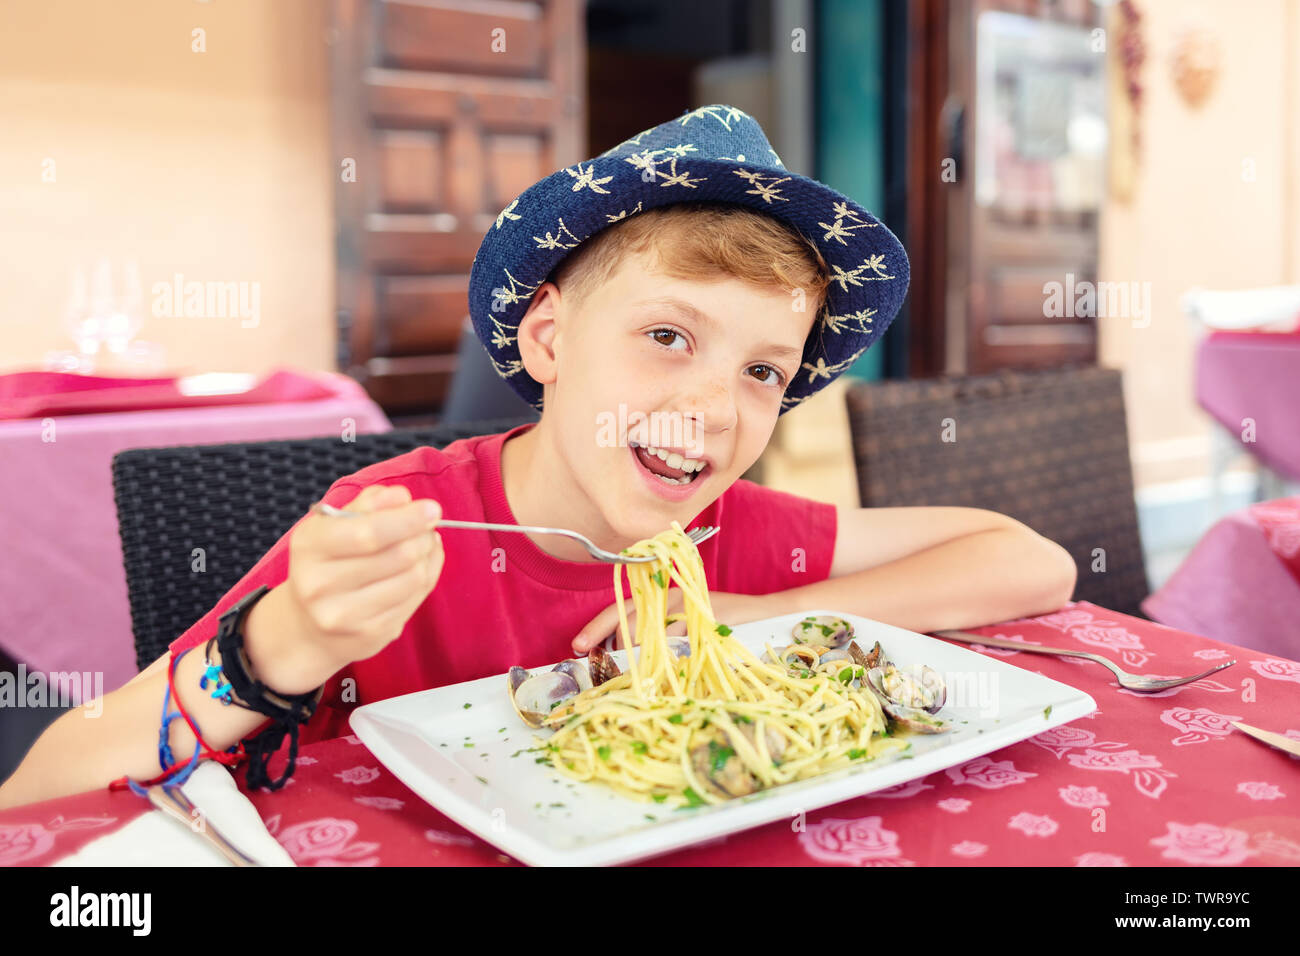 Allegro ragazzino mangiare la pasta a base di pesce per pranzo presso il ristorante italiano terrazza Foto Stock